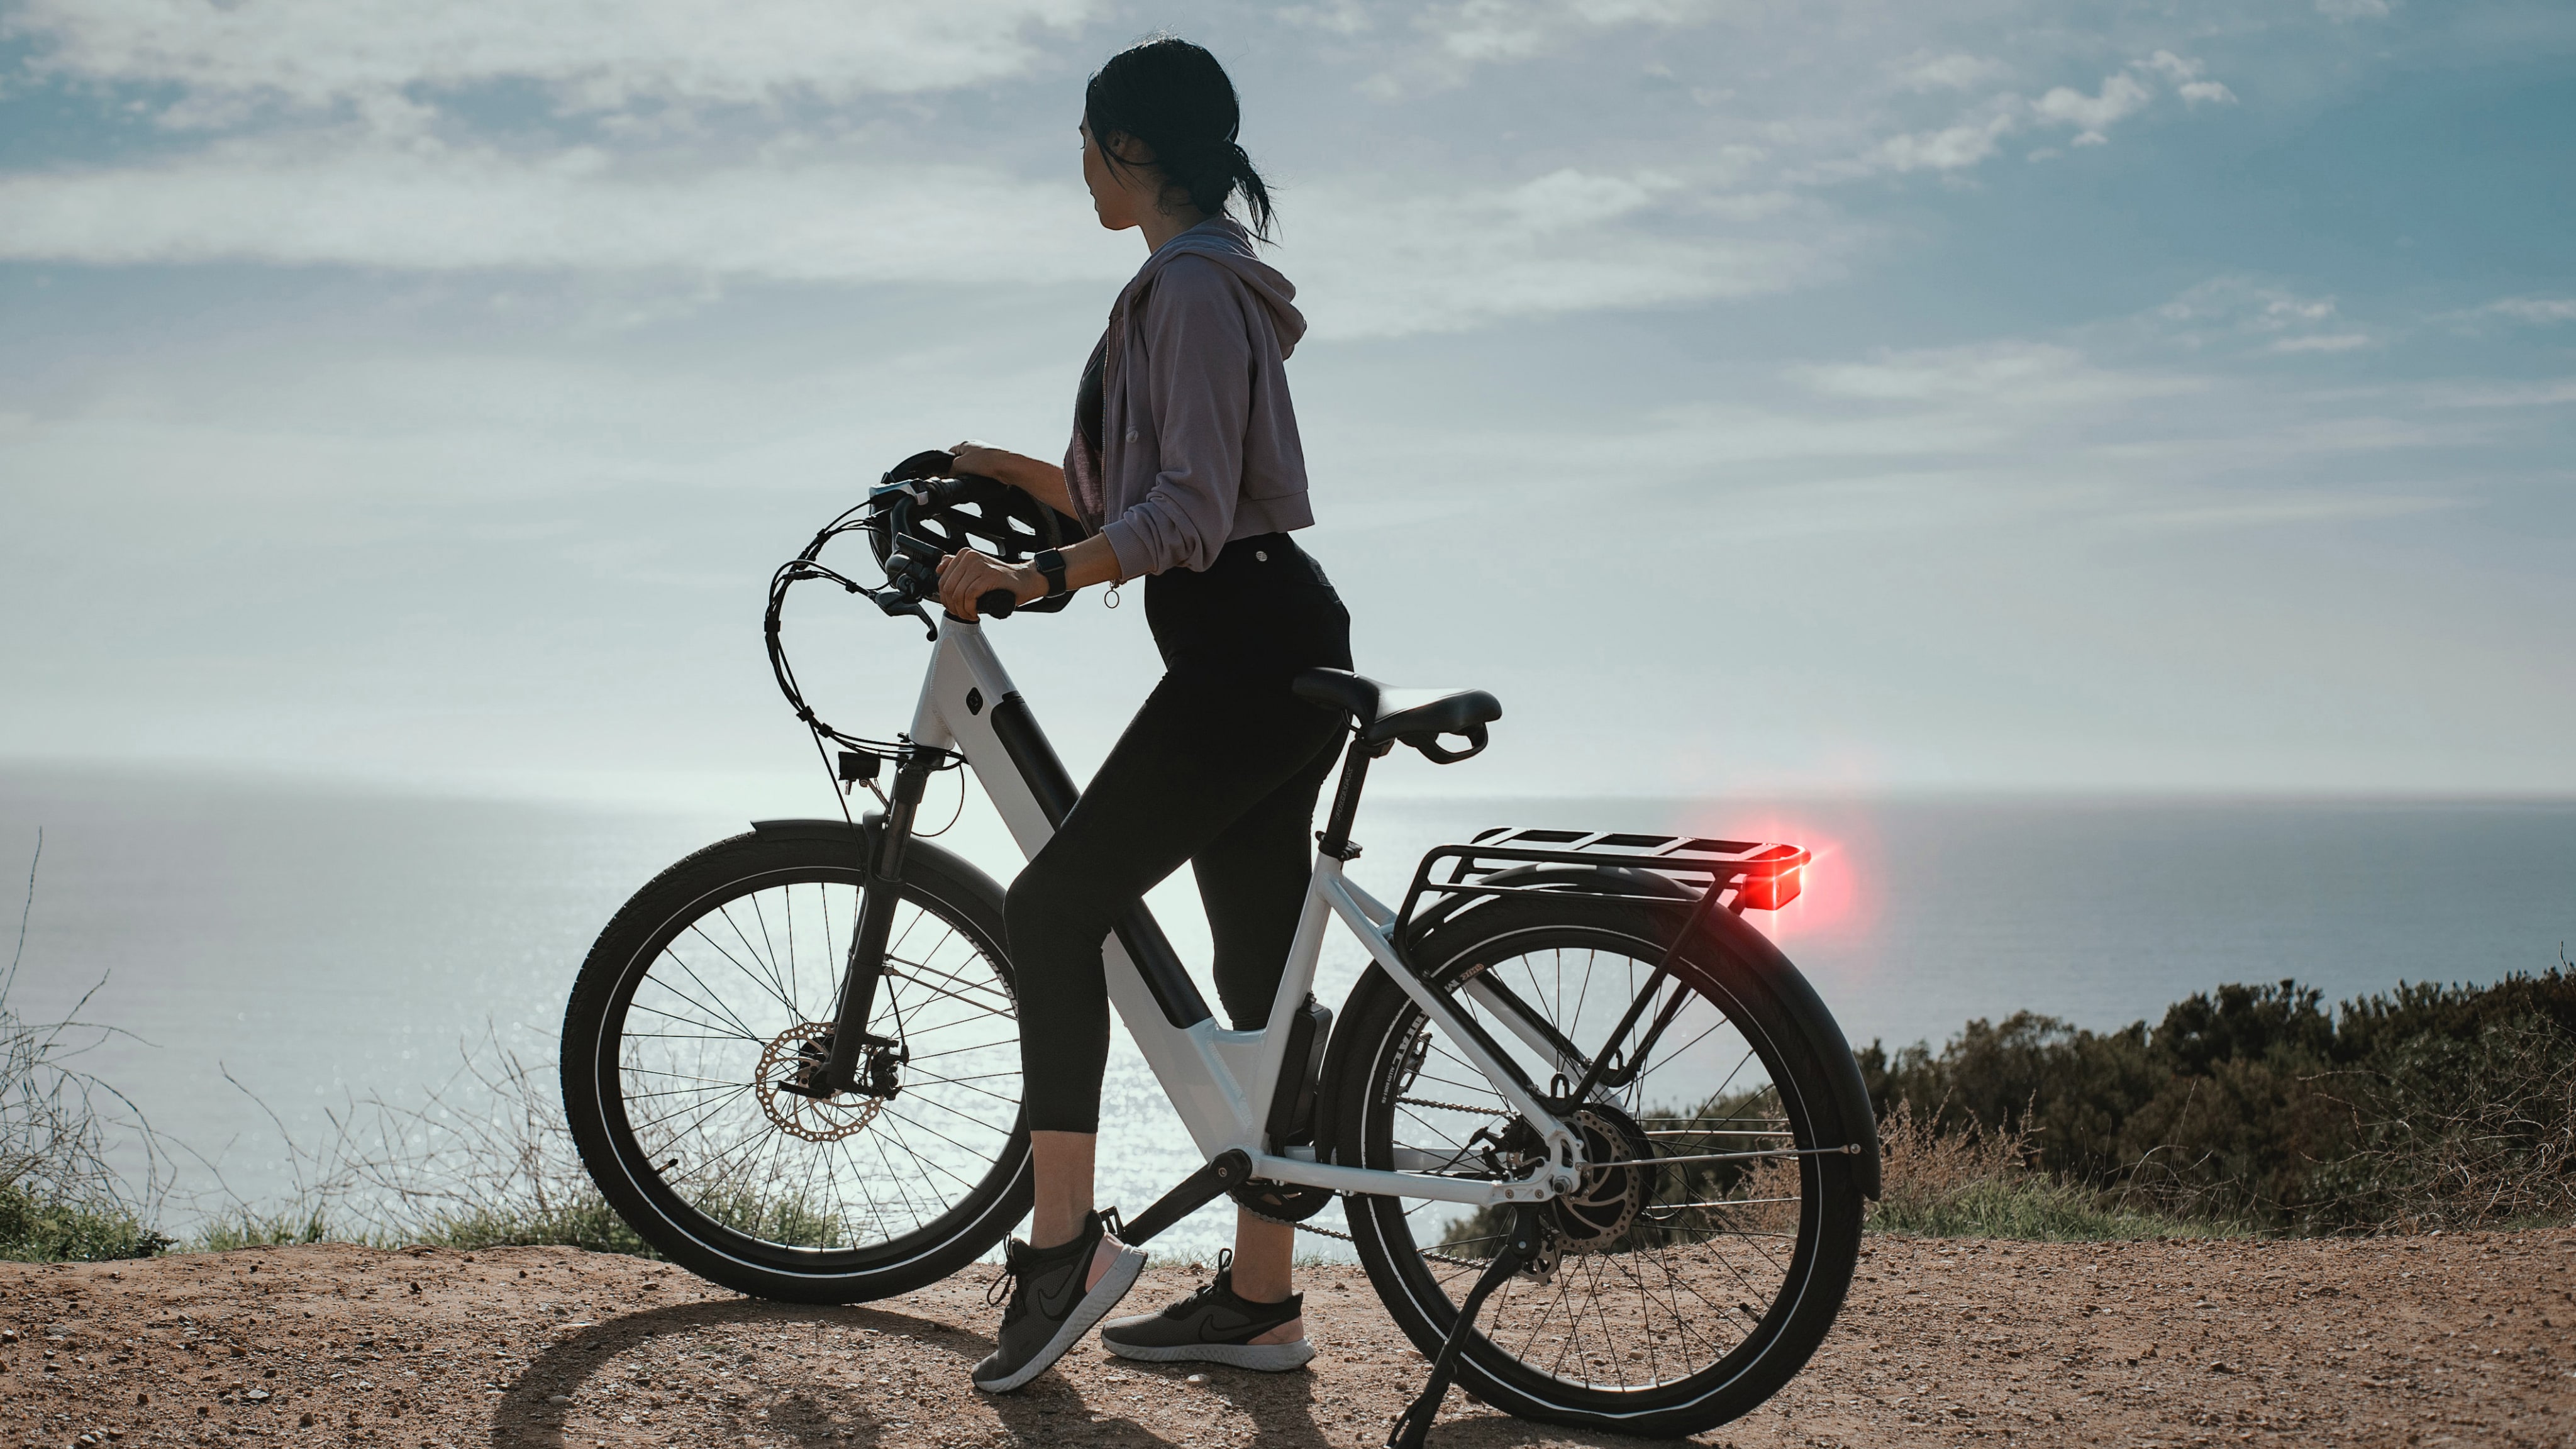 Digitale achteruitkijkspiegel RS 1000 voor fietsen: meer veiligheid op de weg voor fietsers